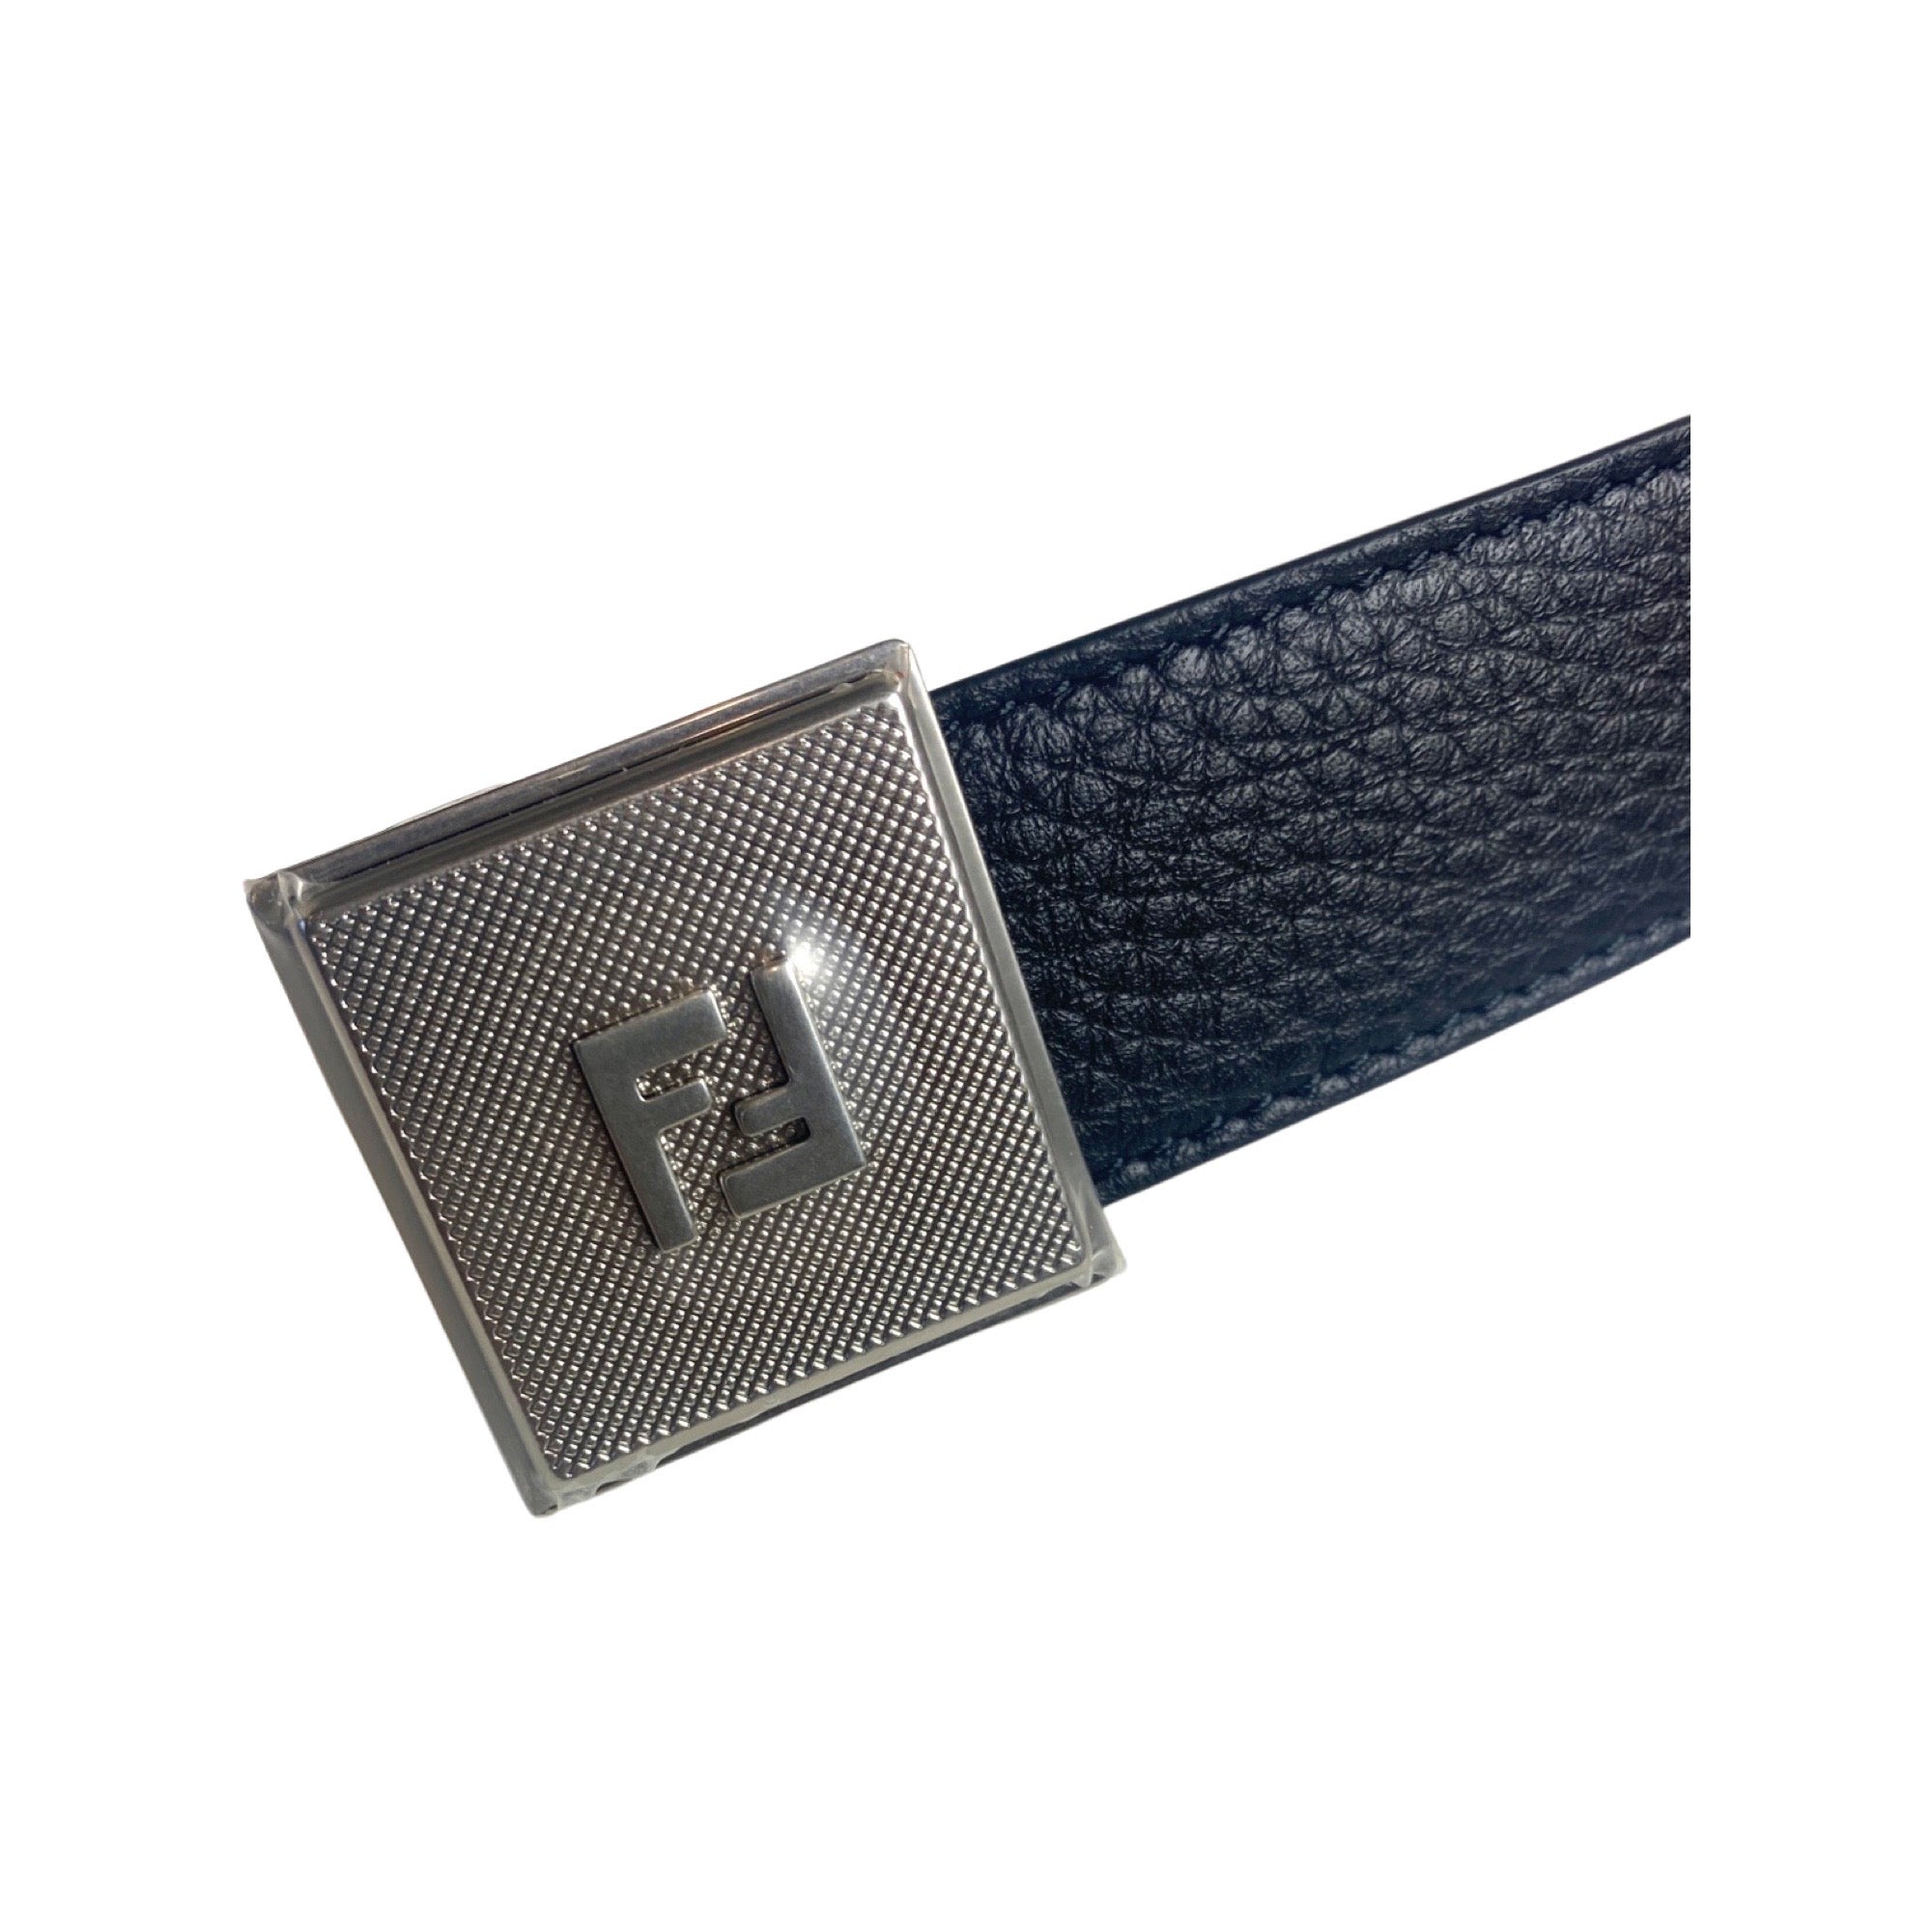 Fendi Black White Reversible Grained Leather Belt 105